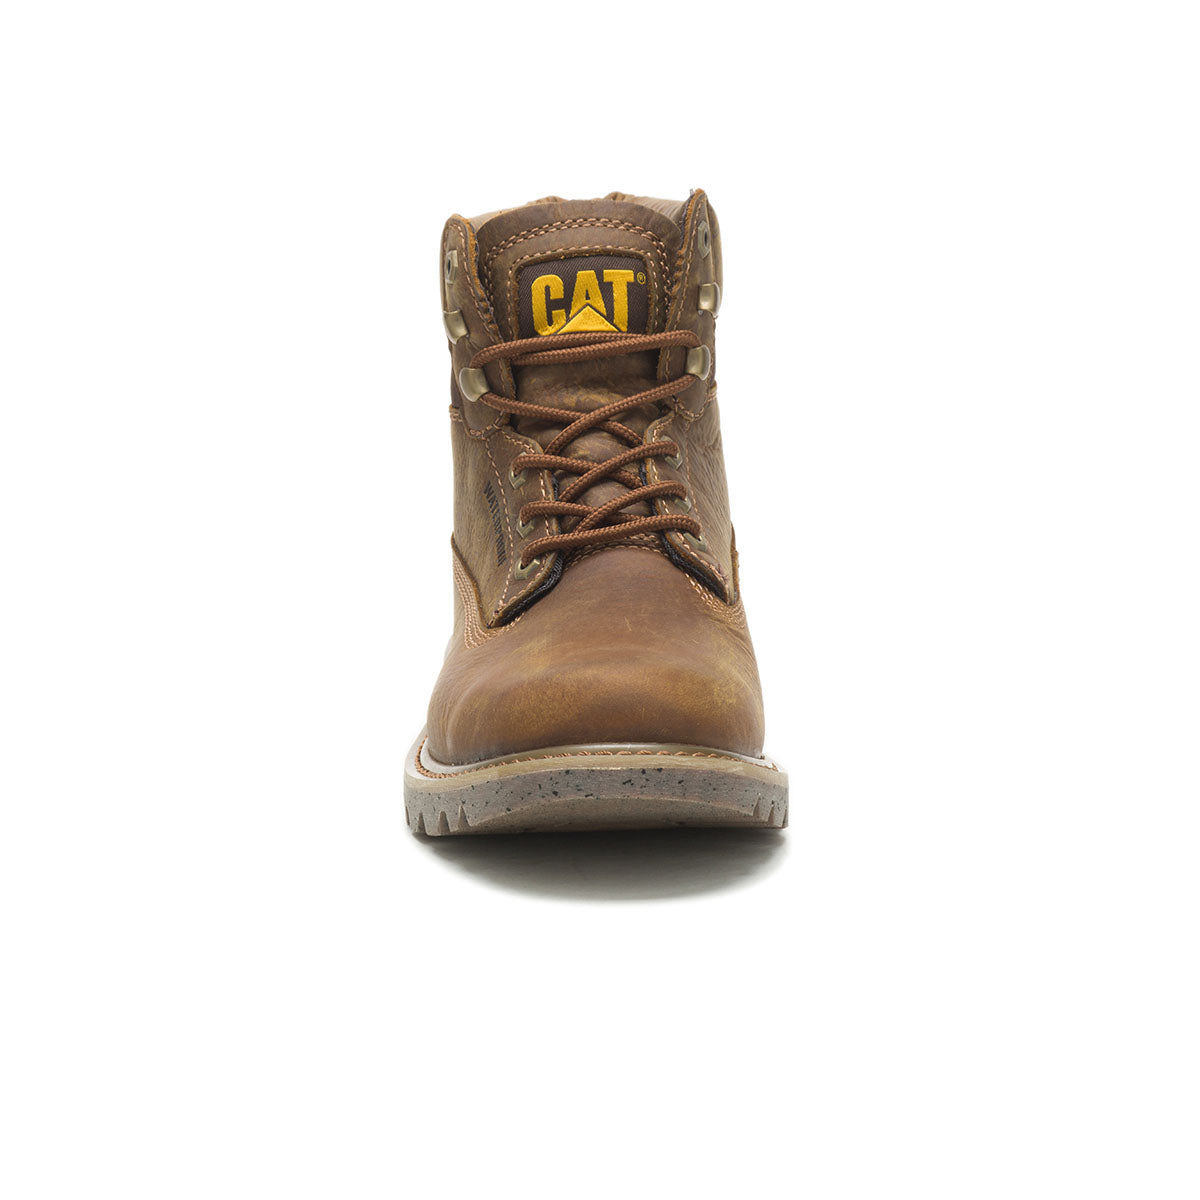 Calzado Hombre – CAT Honduras